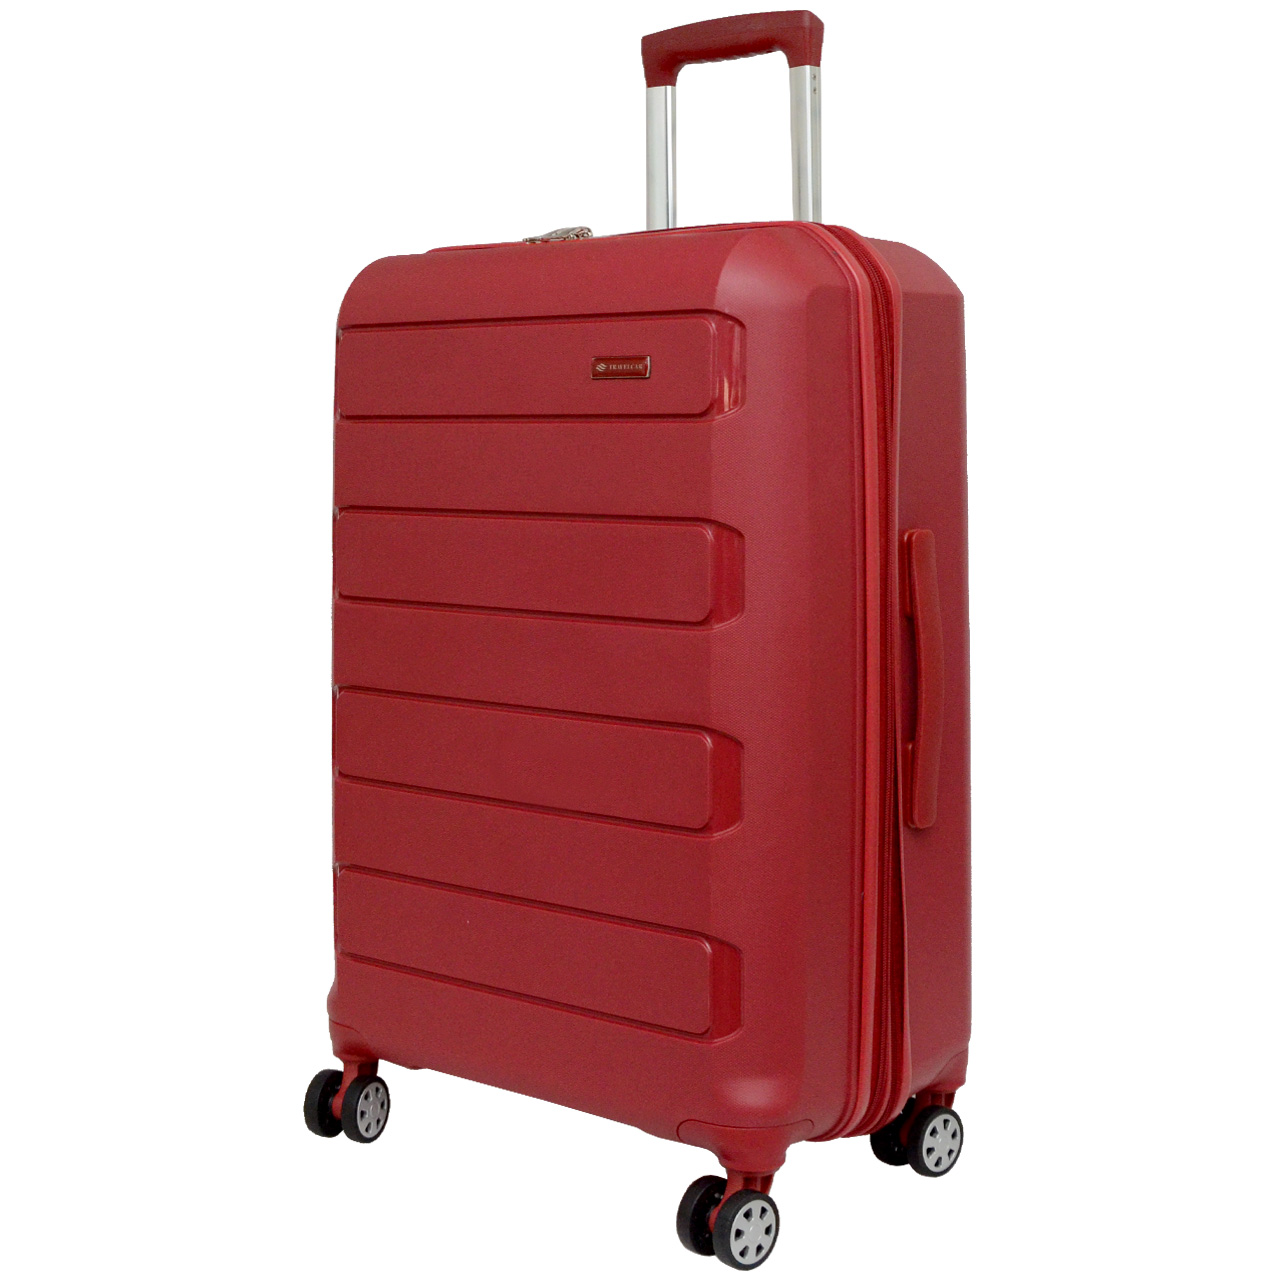 چمدان تراول کار مدل PP 700383 - 01 سایز متوسط